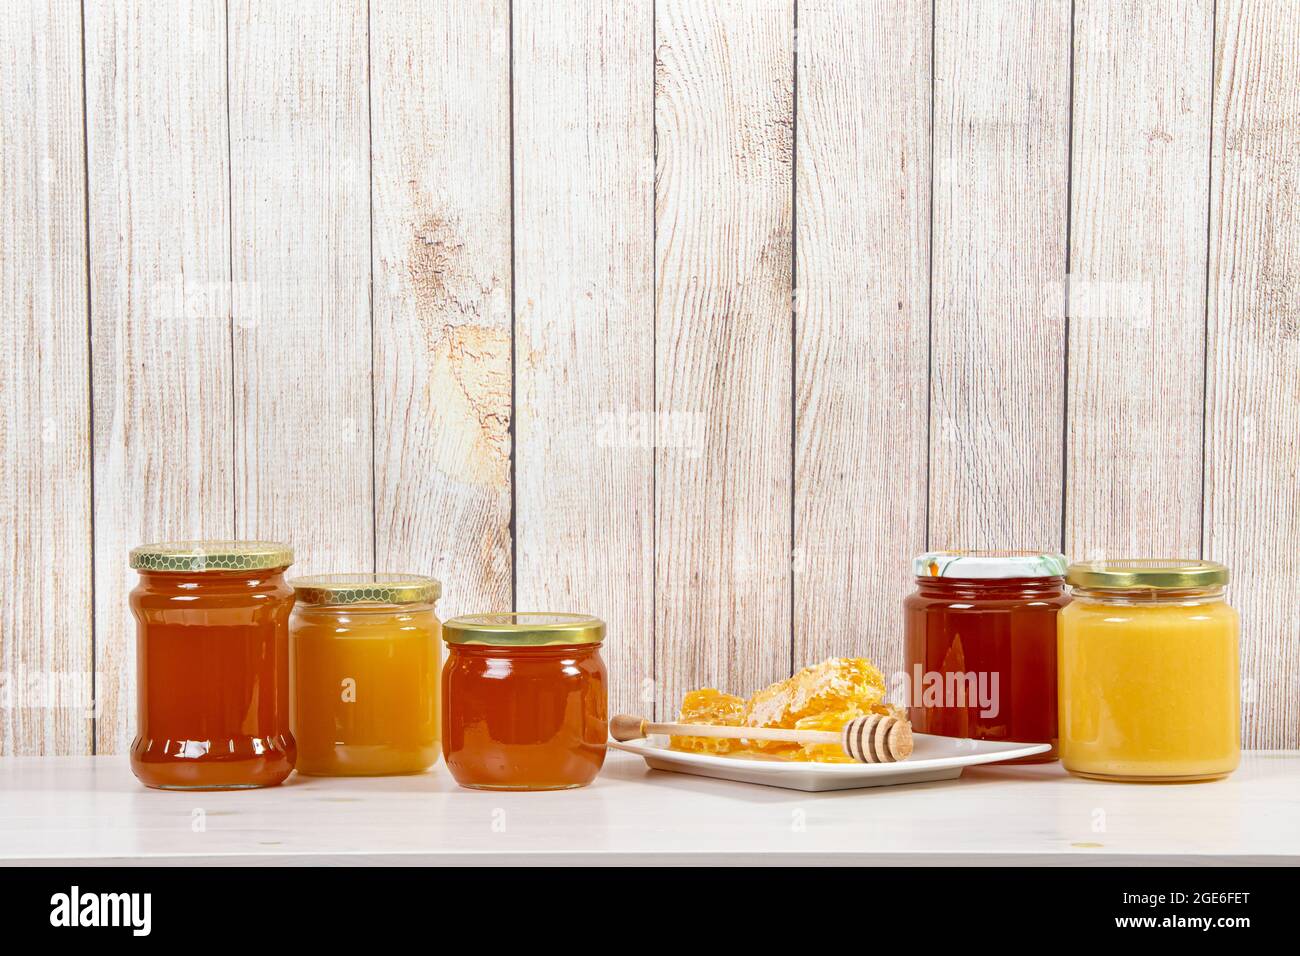 Divers pots de miel avec différentes couleurs miel, beaucoup d'espace de copie sur fond de bois clair. Concept de fond de bordure de miel. Banque D'Images